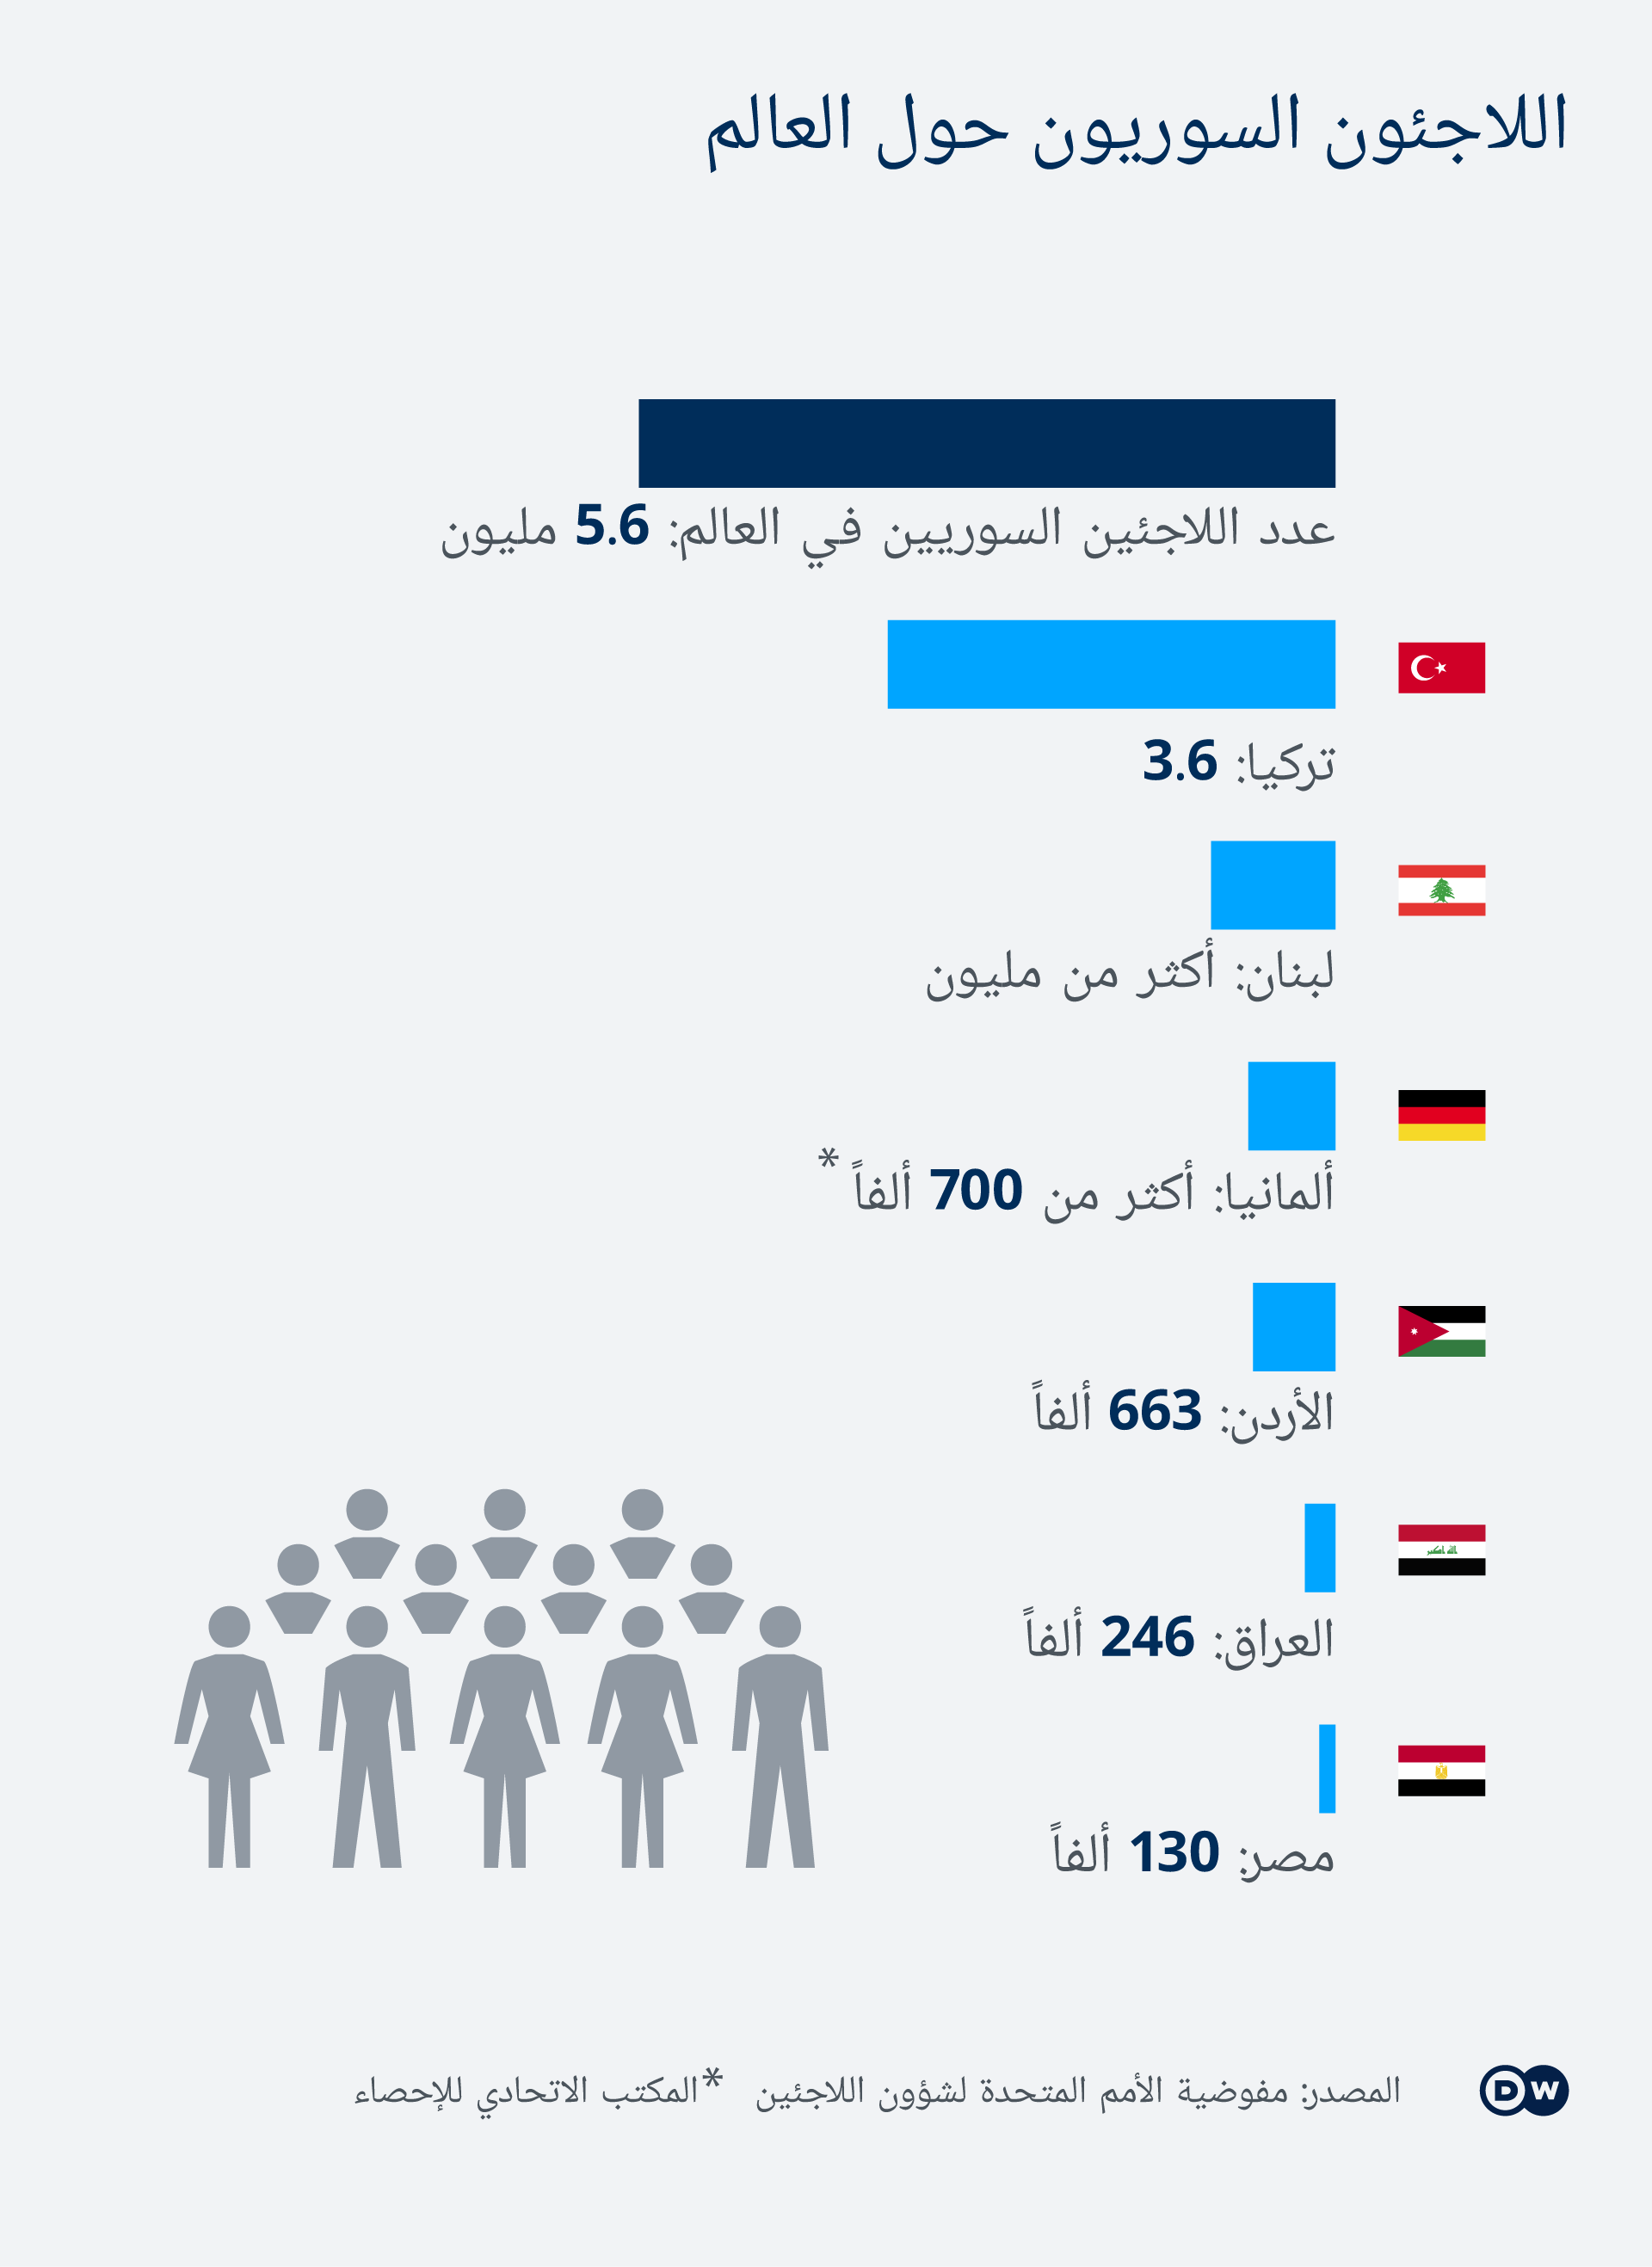 إحصائيات - أعداد اللاجئات السوريات واللاجئين السوريين حول العالم.